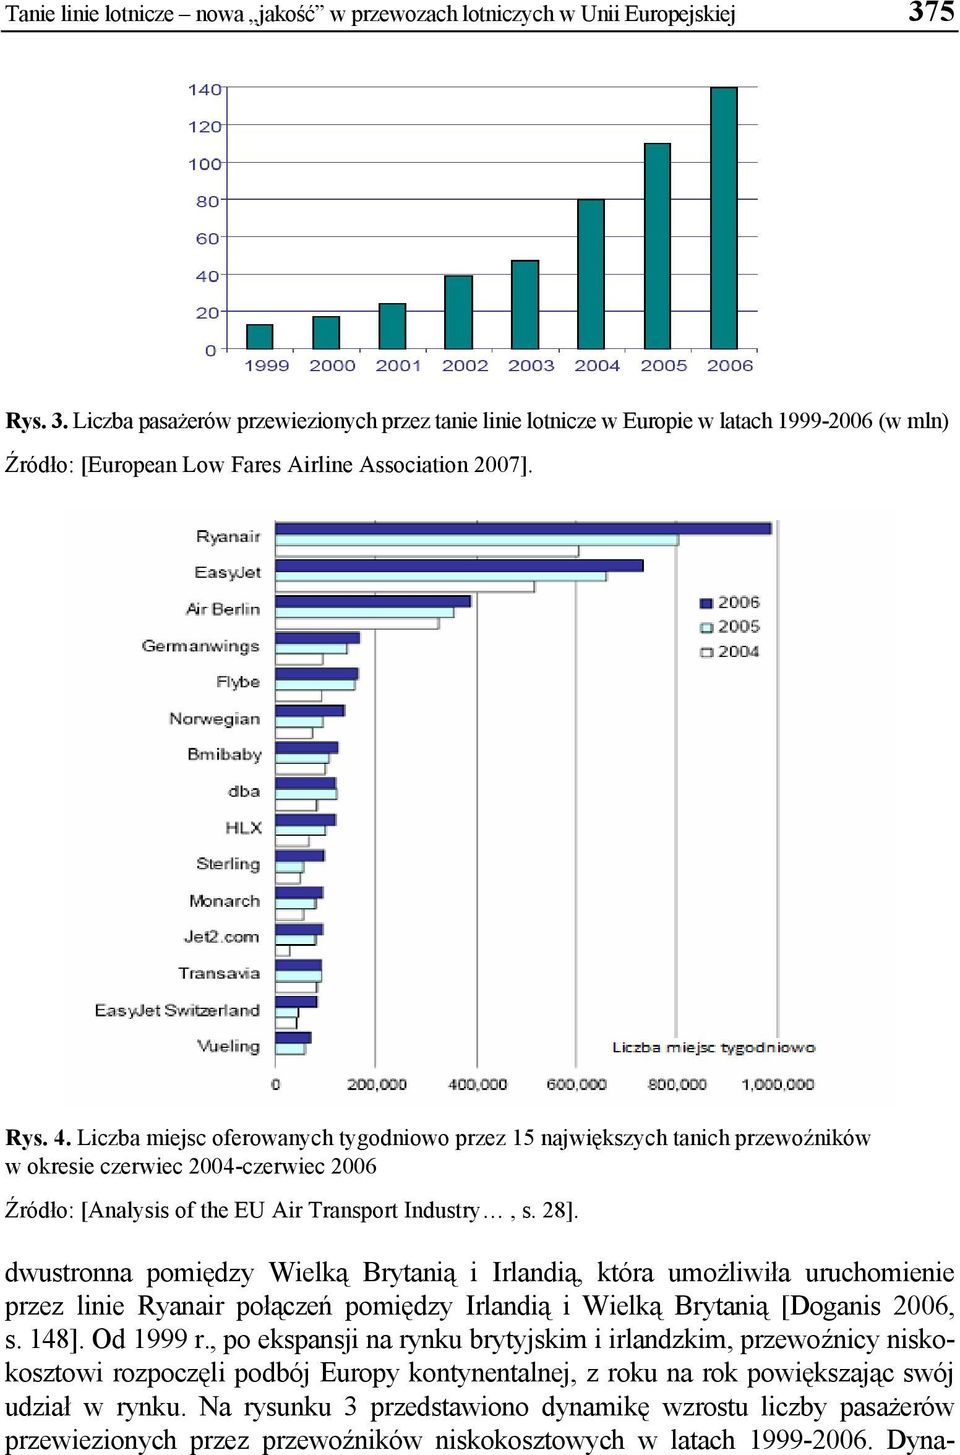 Liczba miejsc oferowanych tygodniowo przez 15 największych tanich przewoźników w okresie czerwiec 2004-czerwiec 2006 Źródło: [Analysis of the EU Air Transport Industry, s. 28].